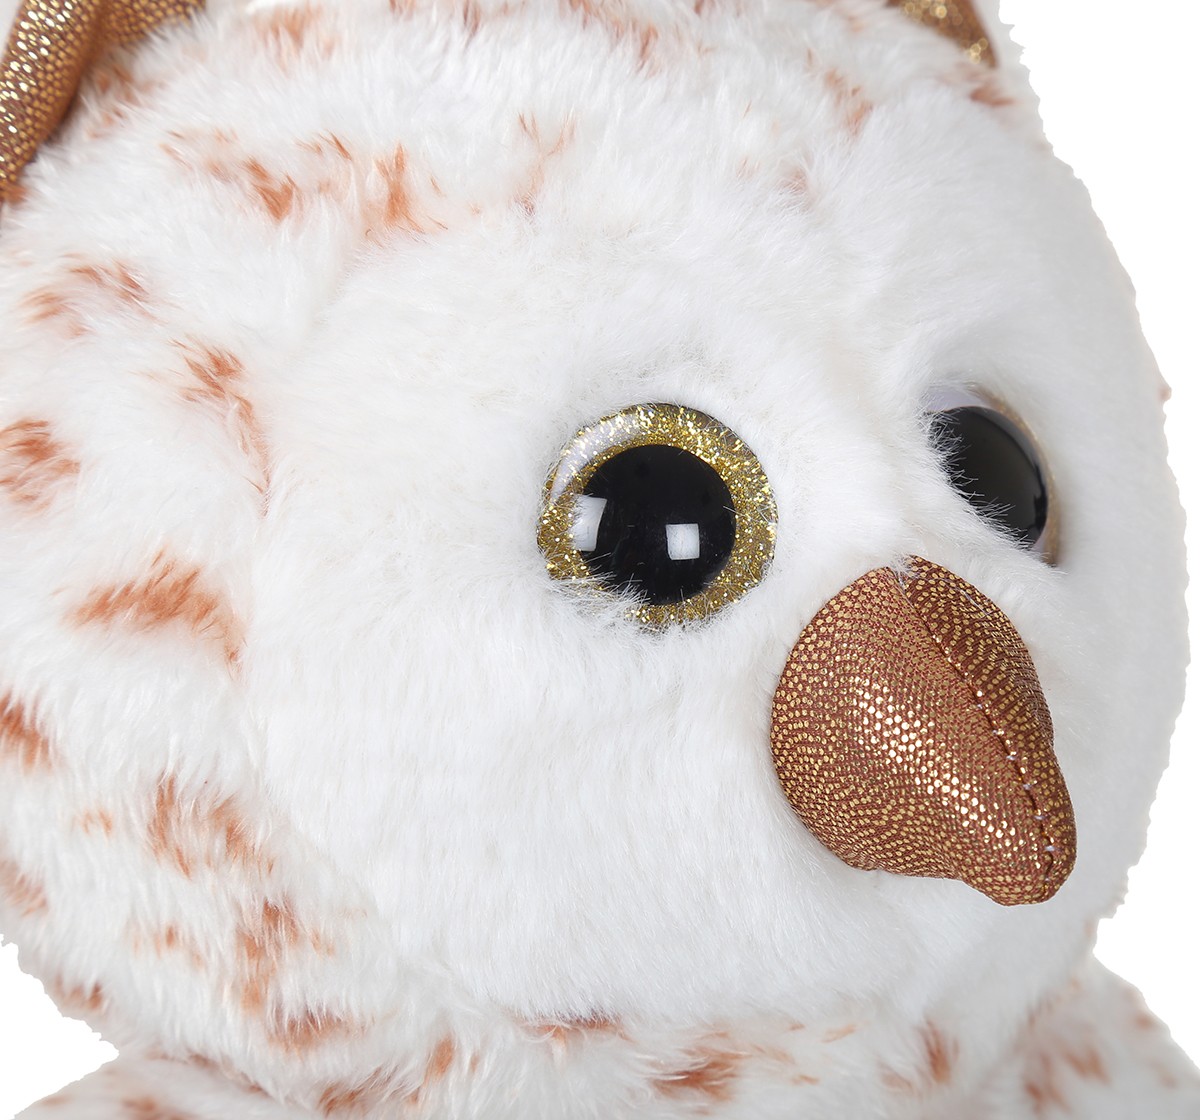 Mirada 25cm owl with glitter eye Multicolor 3Y+